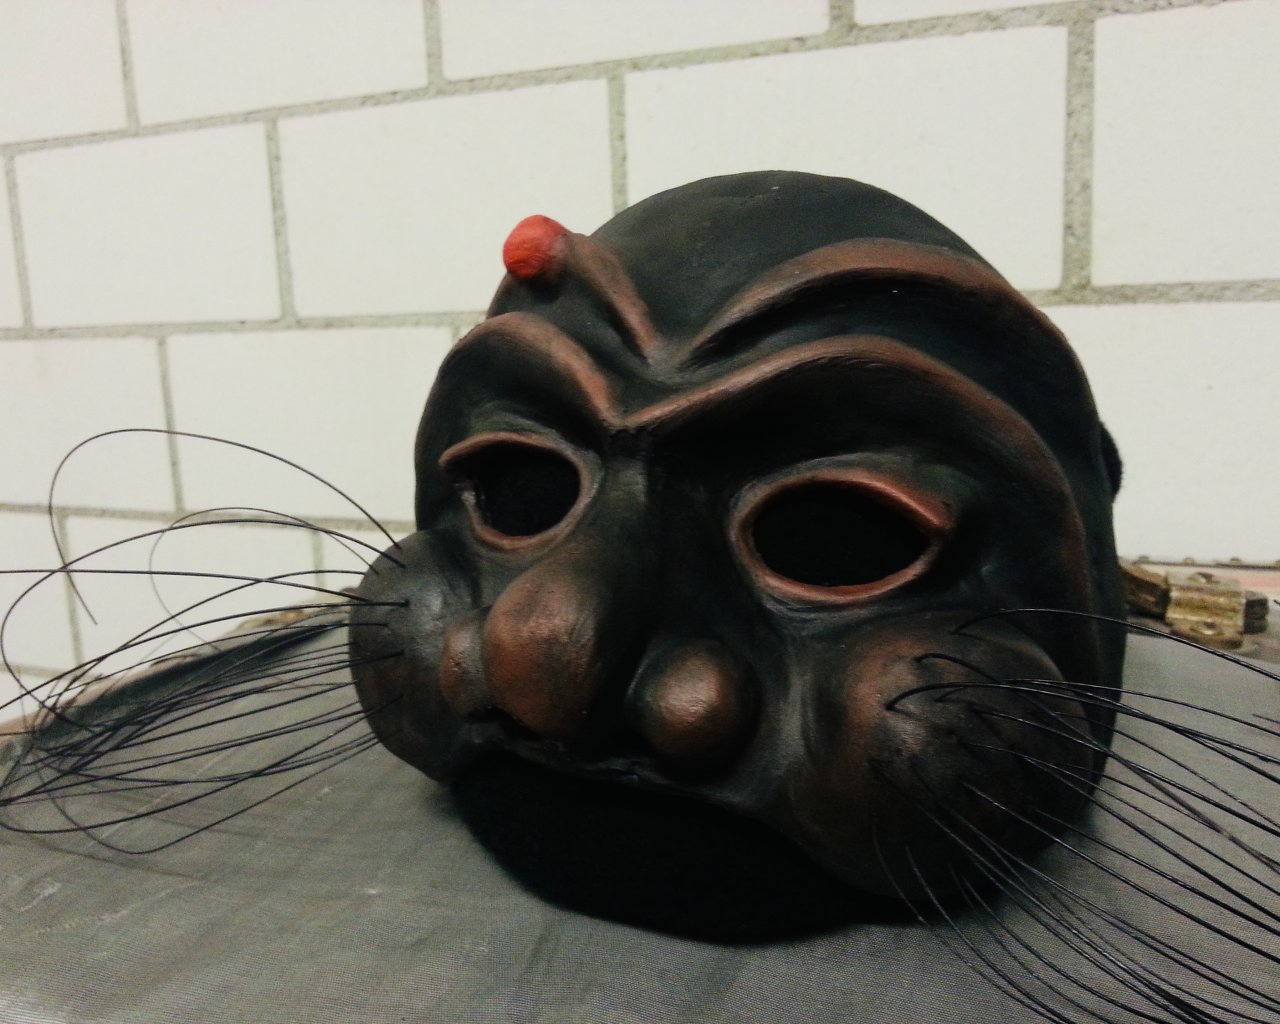 Maschera in Latex per Arlecchino, Theaterwerkstatt Gleis 5, Frauenfeld 2013